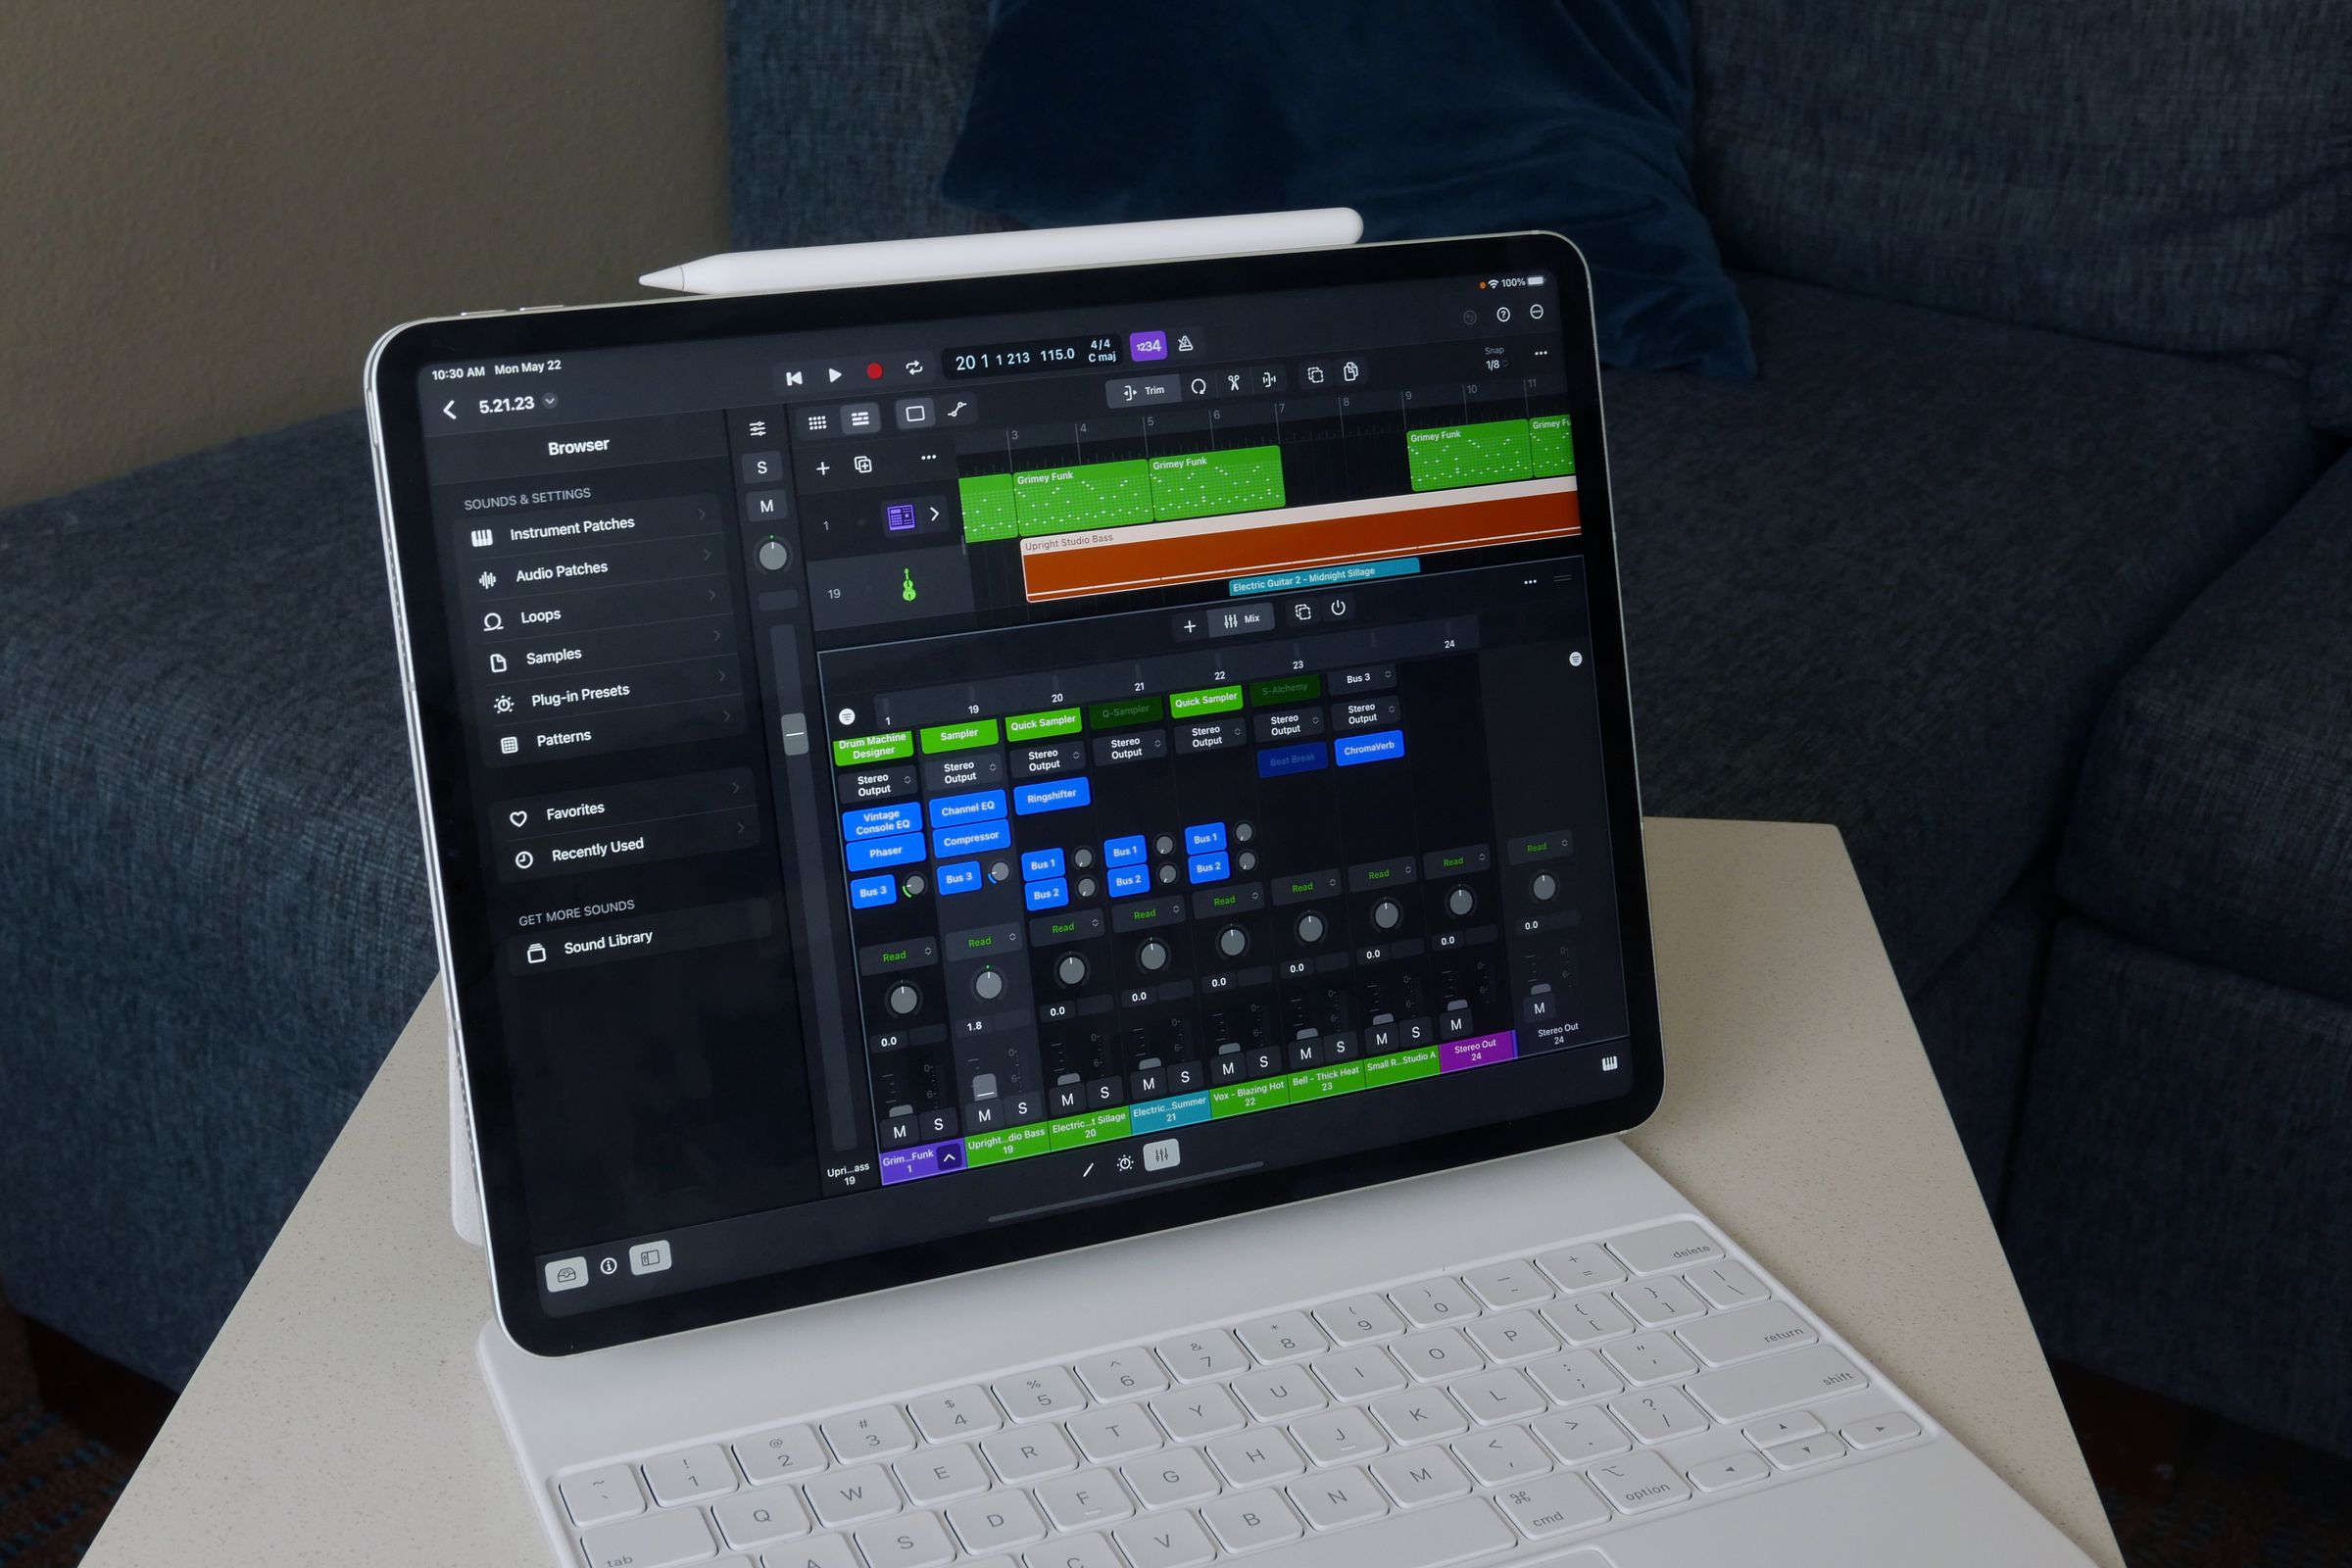 Logic Pro open on an iPad Pro and Magic Keyboard